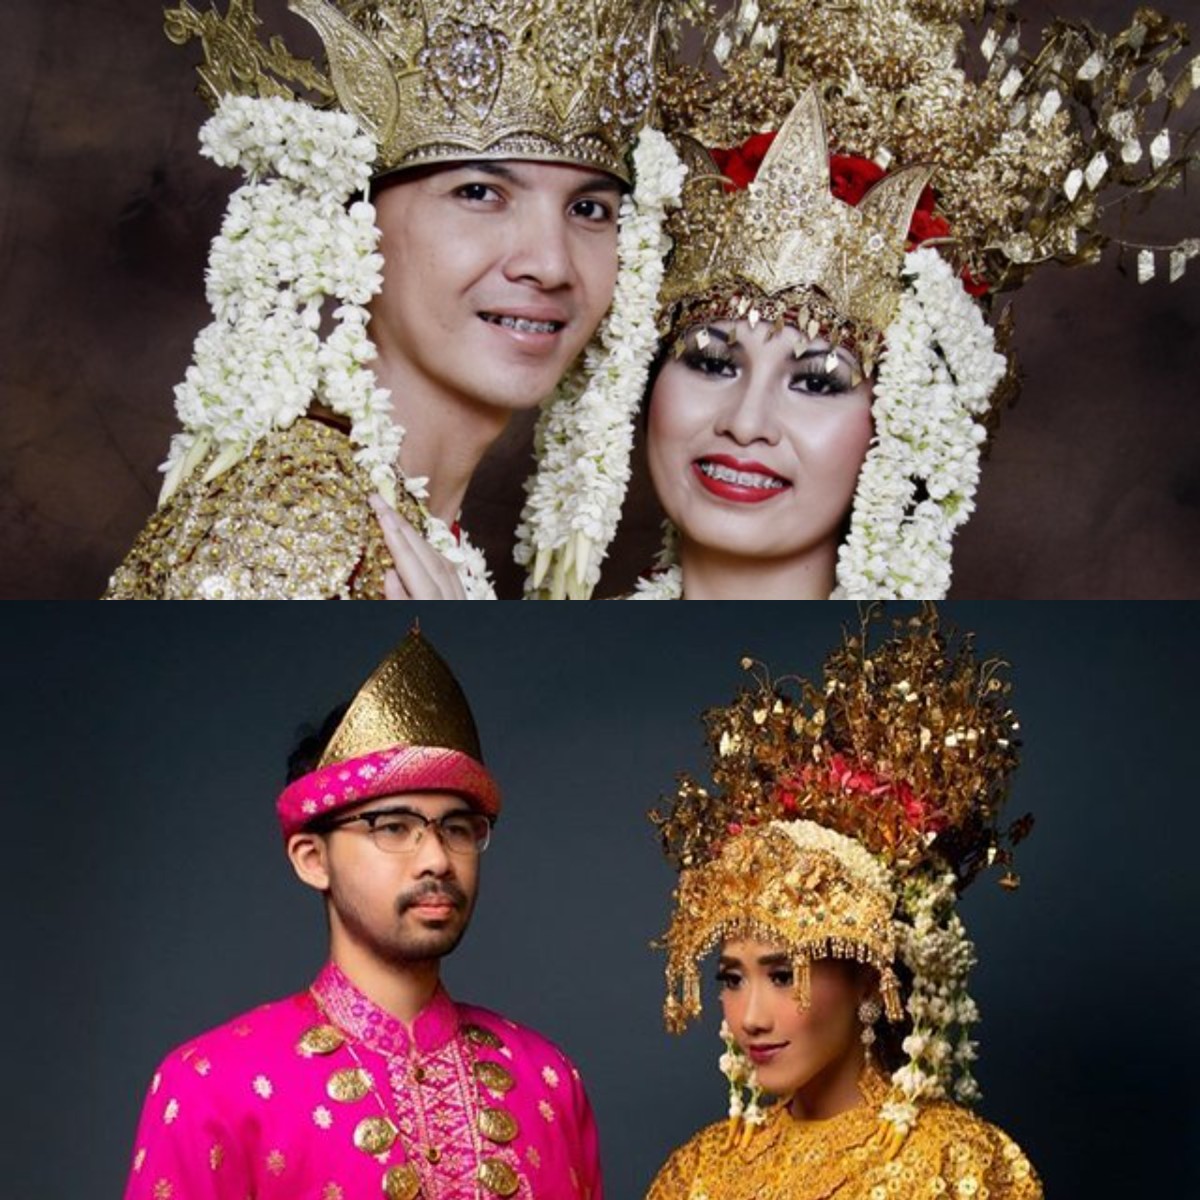 Mari Kenali Pakaian Khas Sumatera Selatan yang Khas dan Anggun!